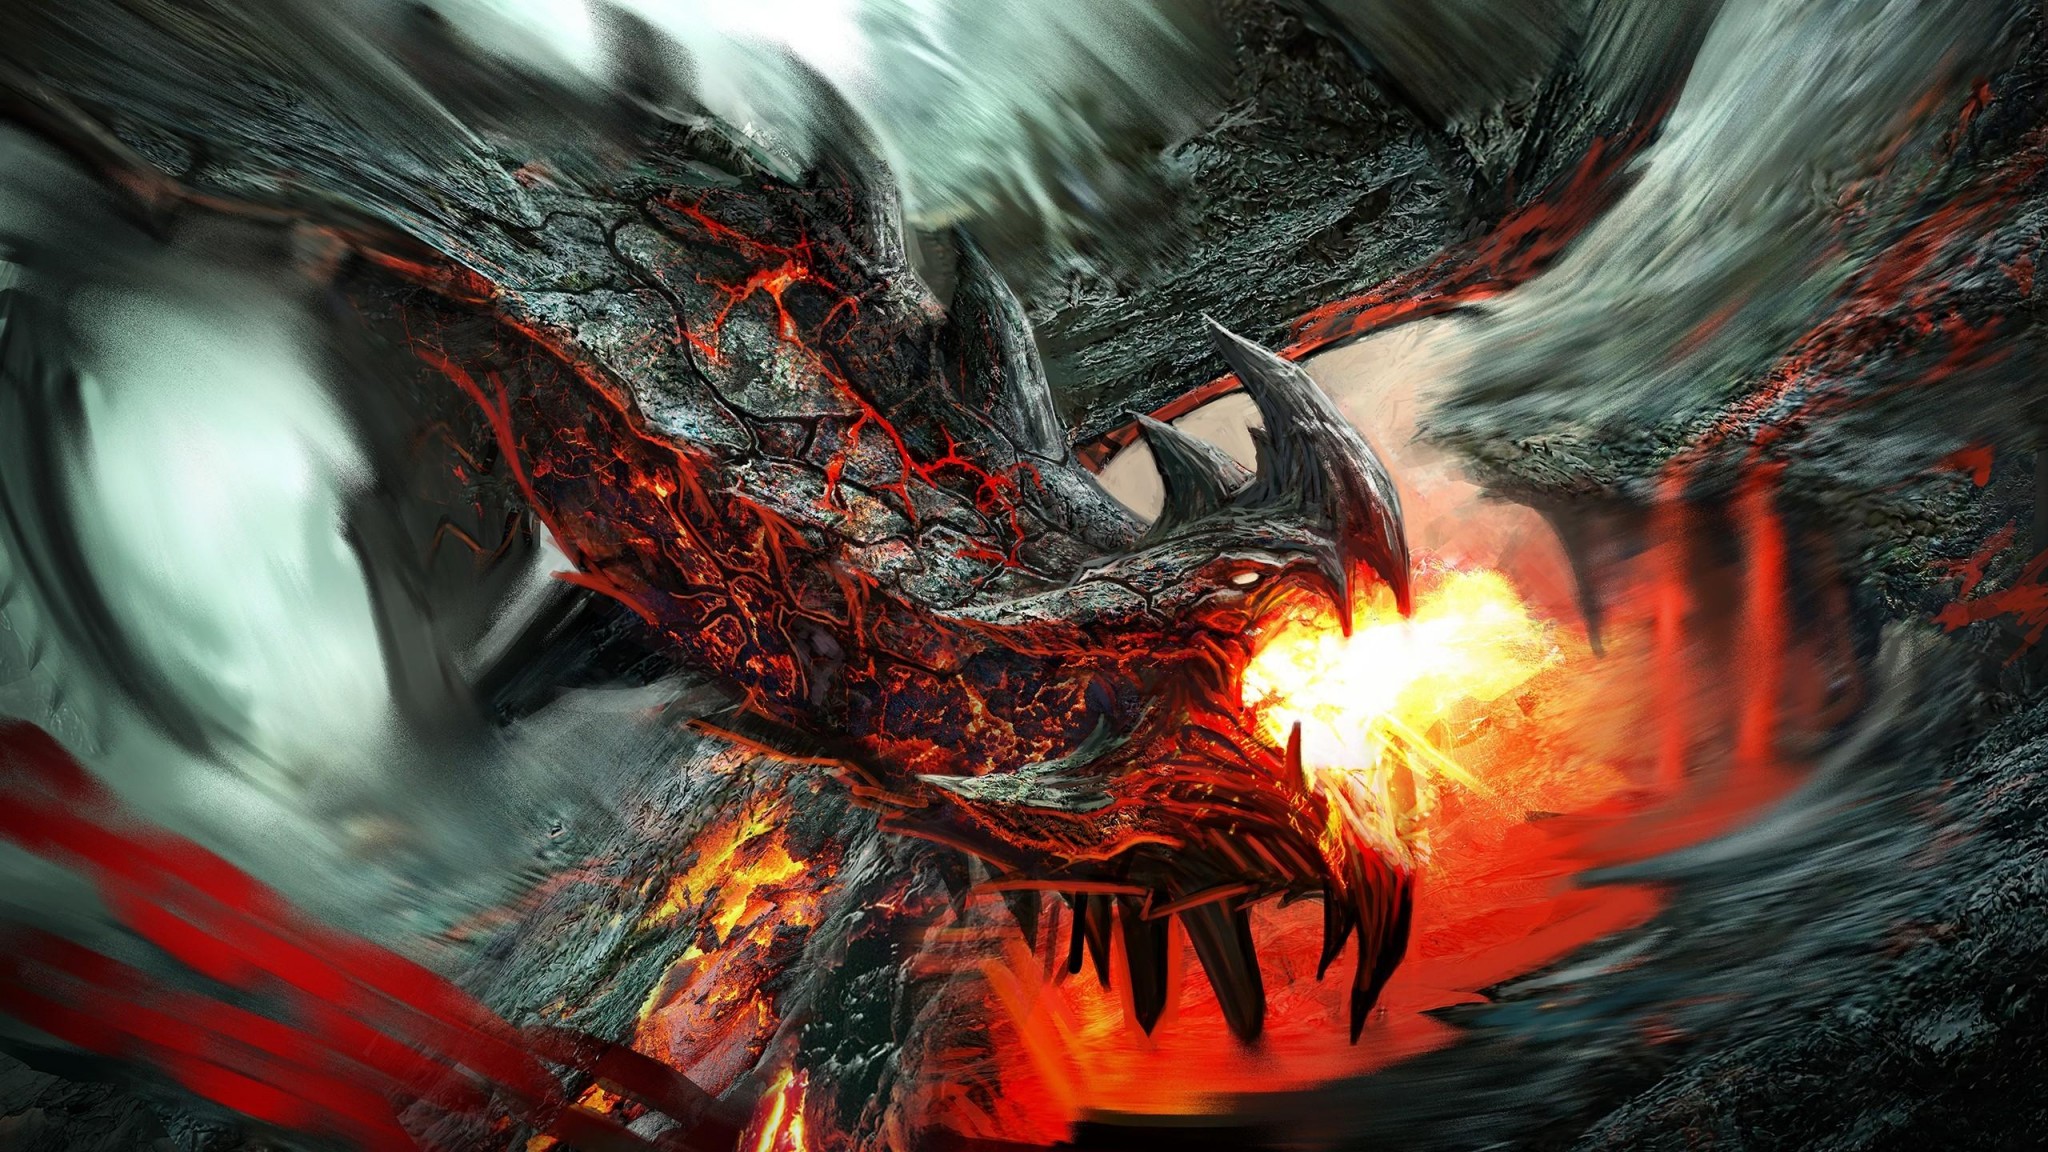 fond d'écran dragon hd,jeu d'aventure d'action,dragon,oeuvre de cg,démon,personnage fictif